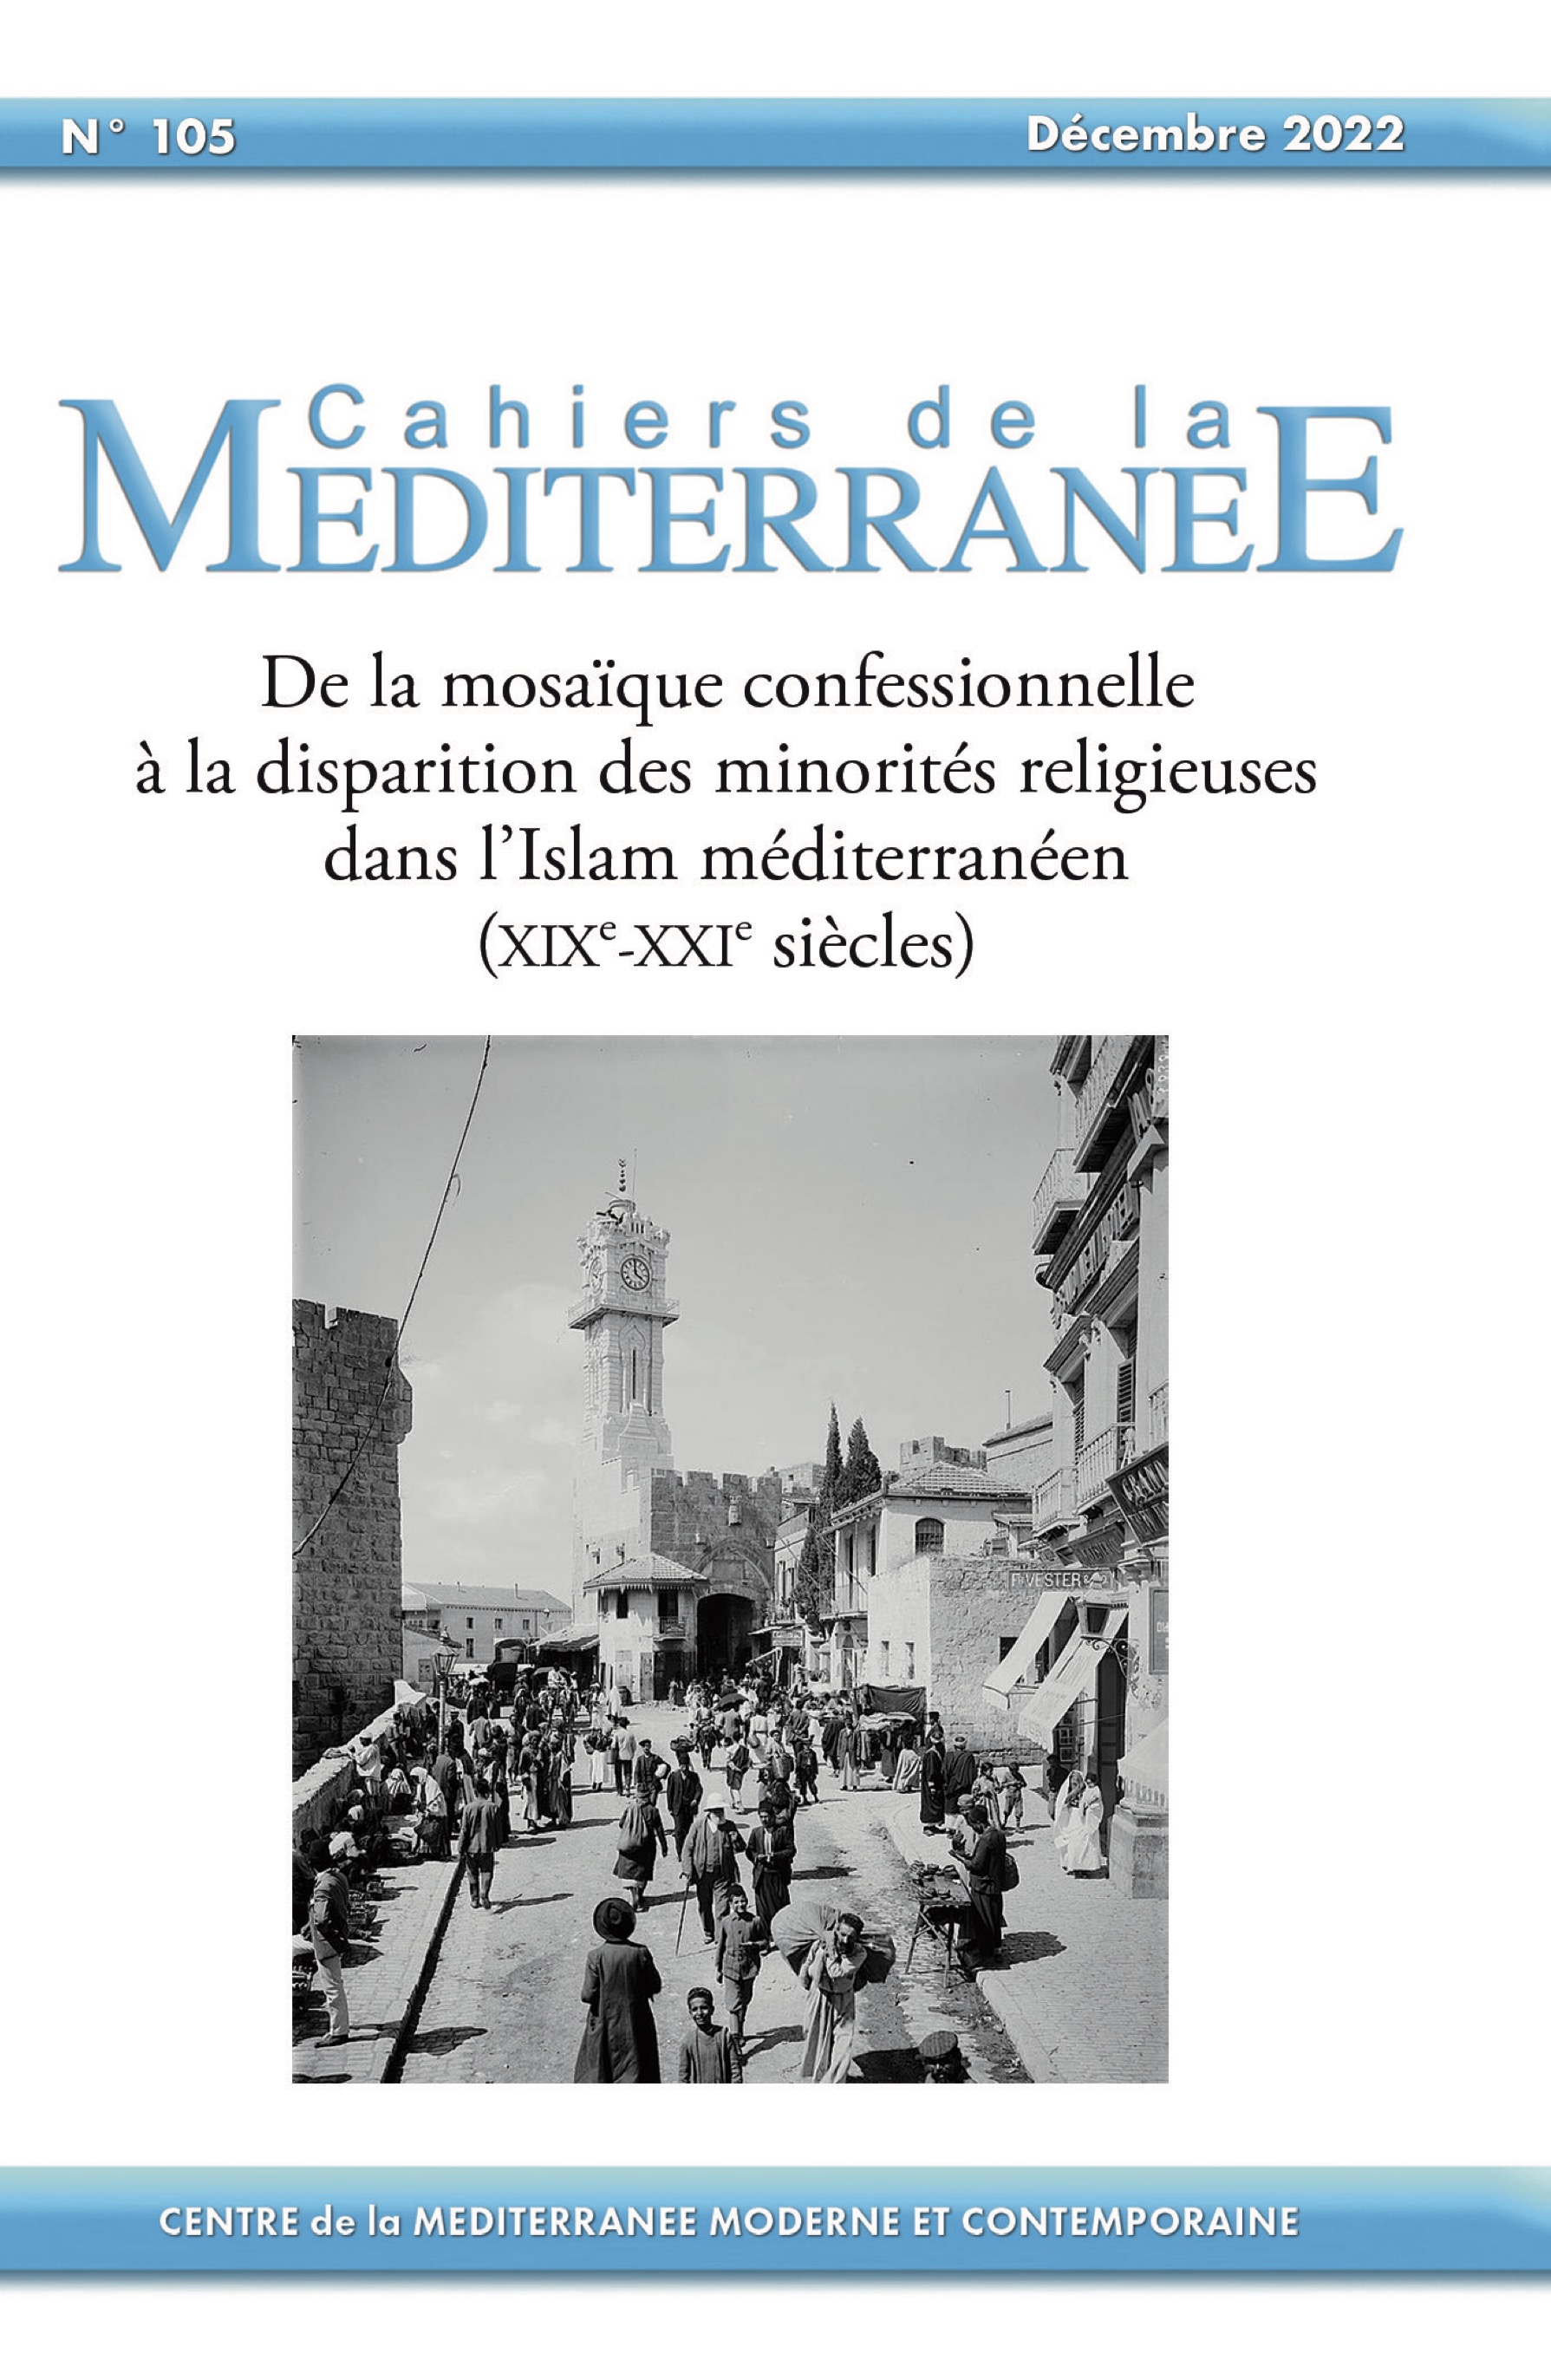 De la mosaïque confessionnelle à la disparition des minorités religieuses dans l’Islam méditerranéen (XIXe-XXIe siècles)